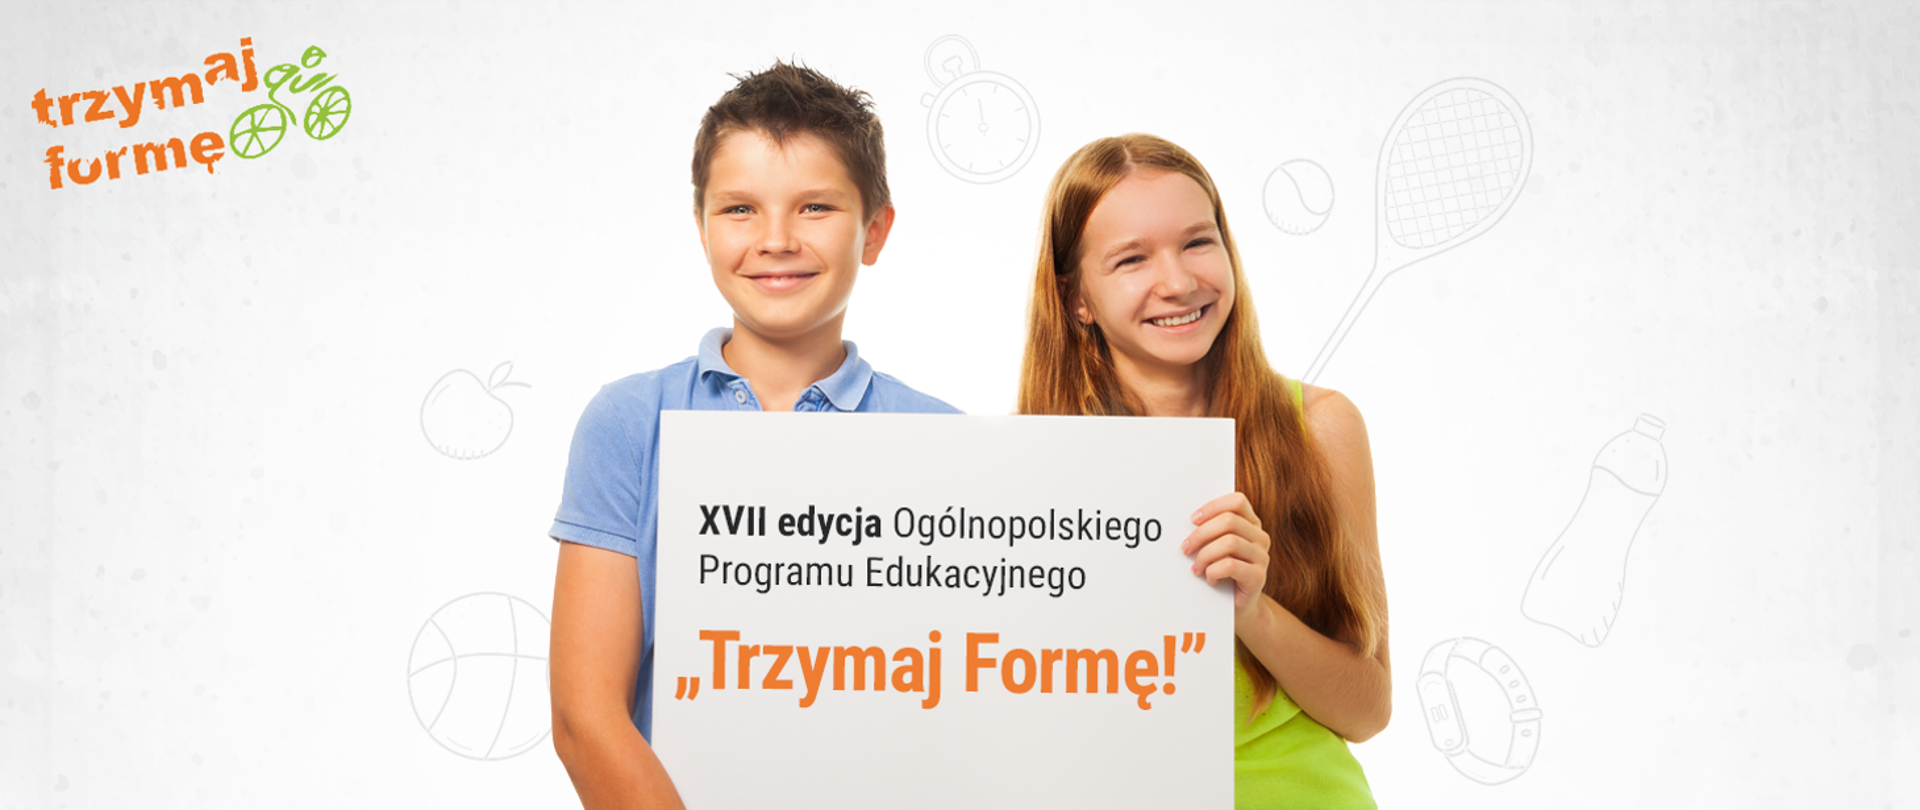 Chłopiec i dziewczynka prezentują planszę z napisem: Ogólnopolski Program Edukacyjny „Trzymaj Formę!”